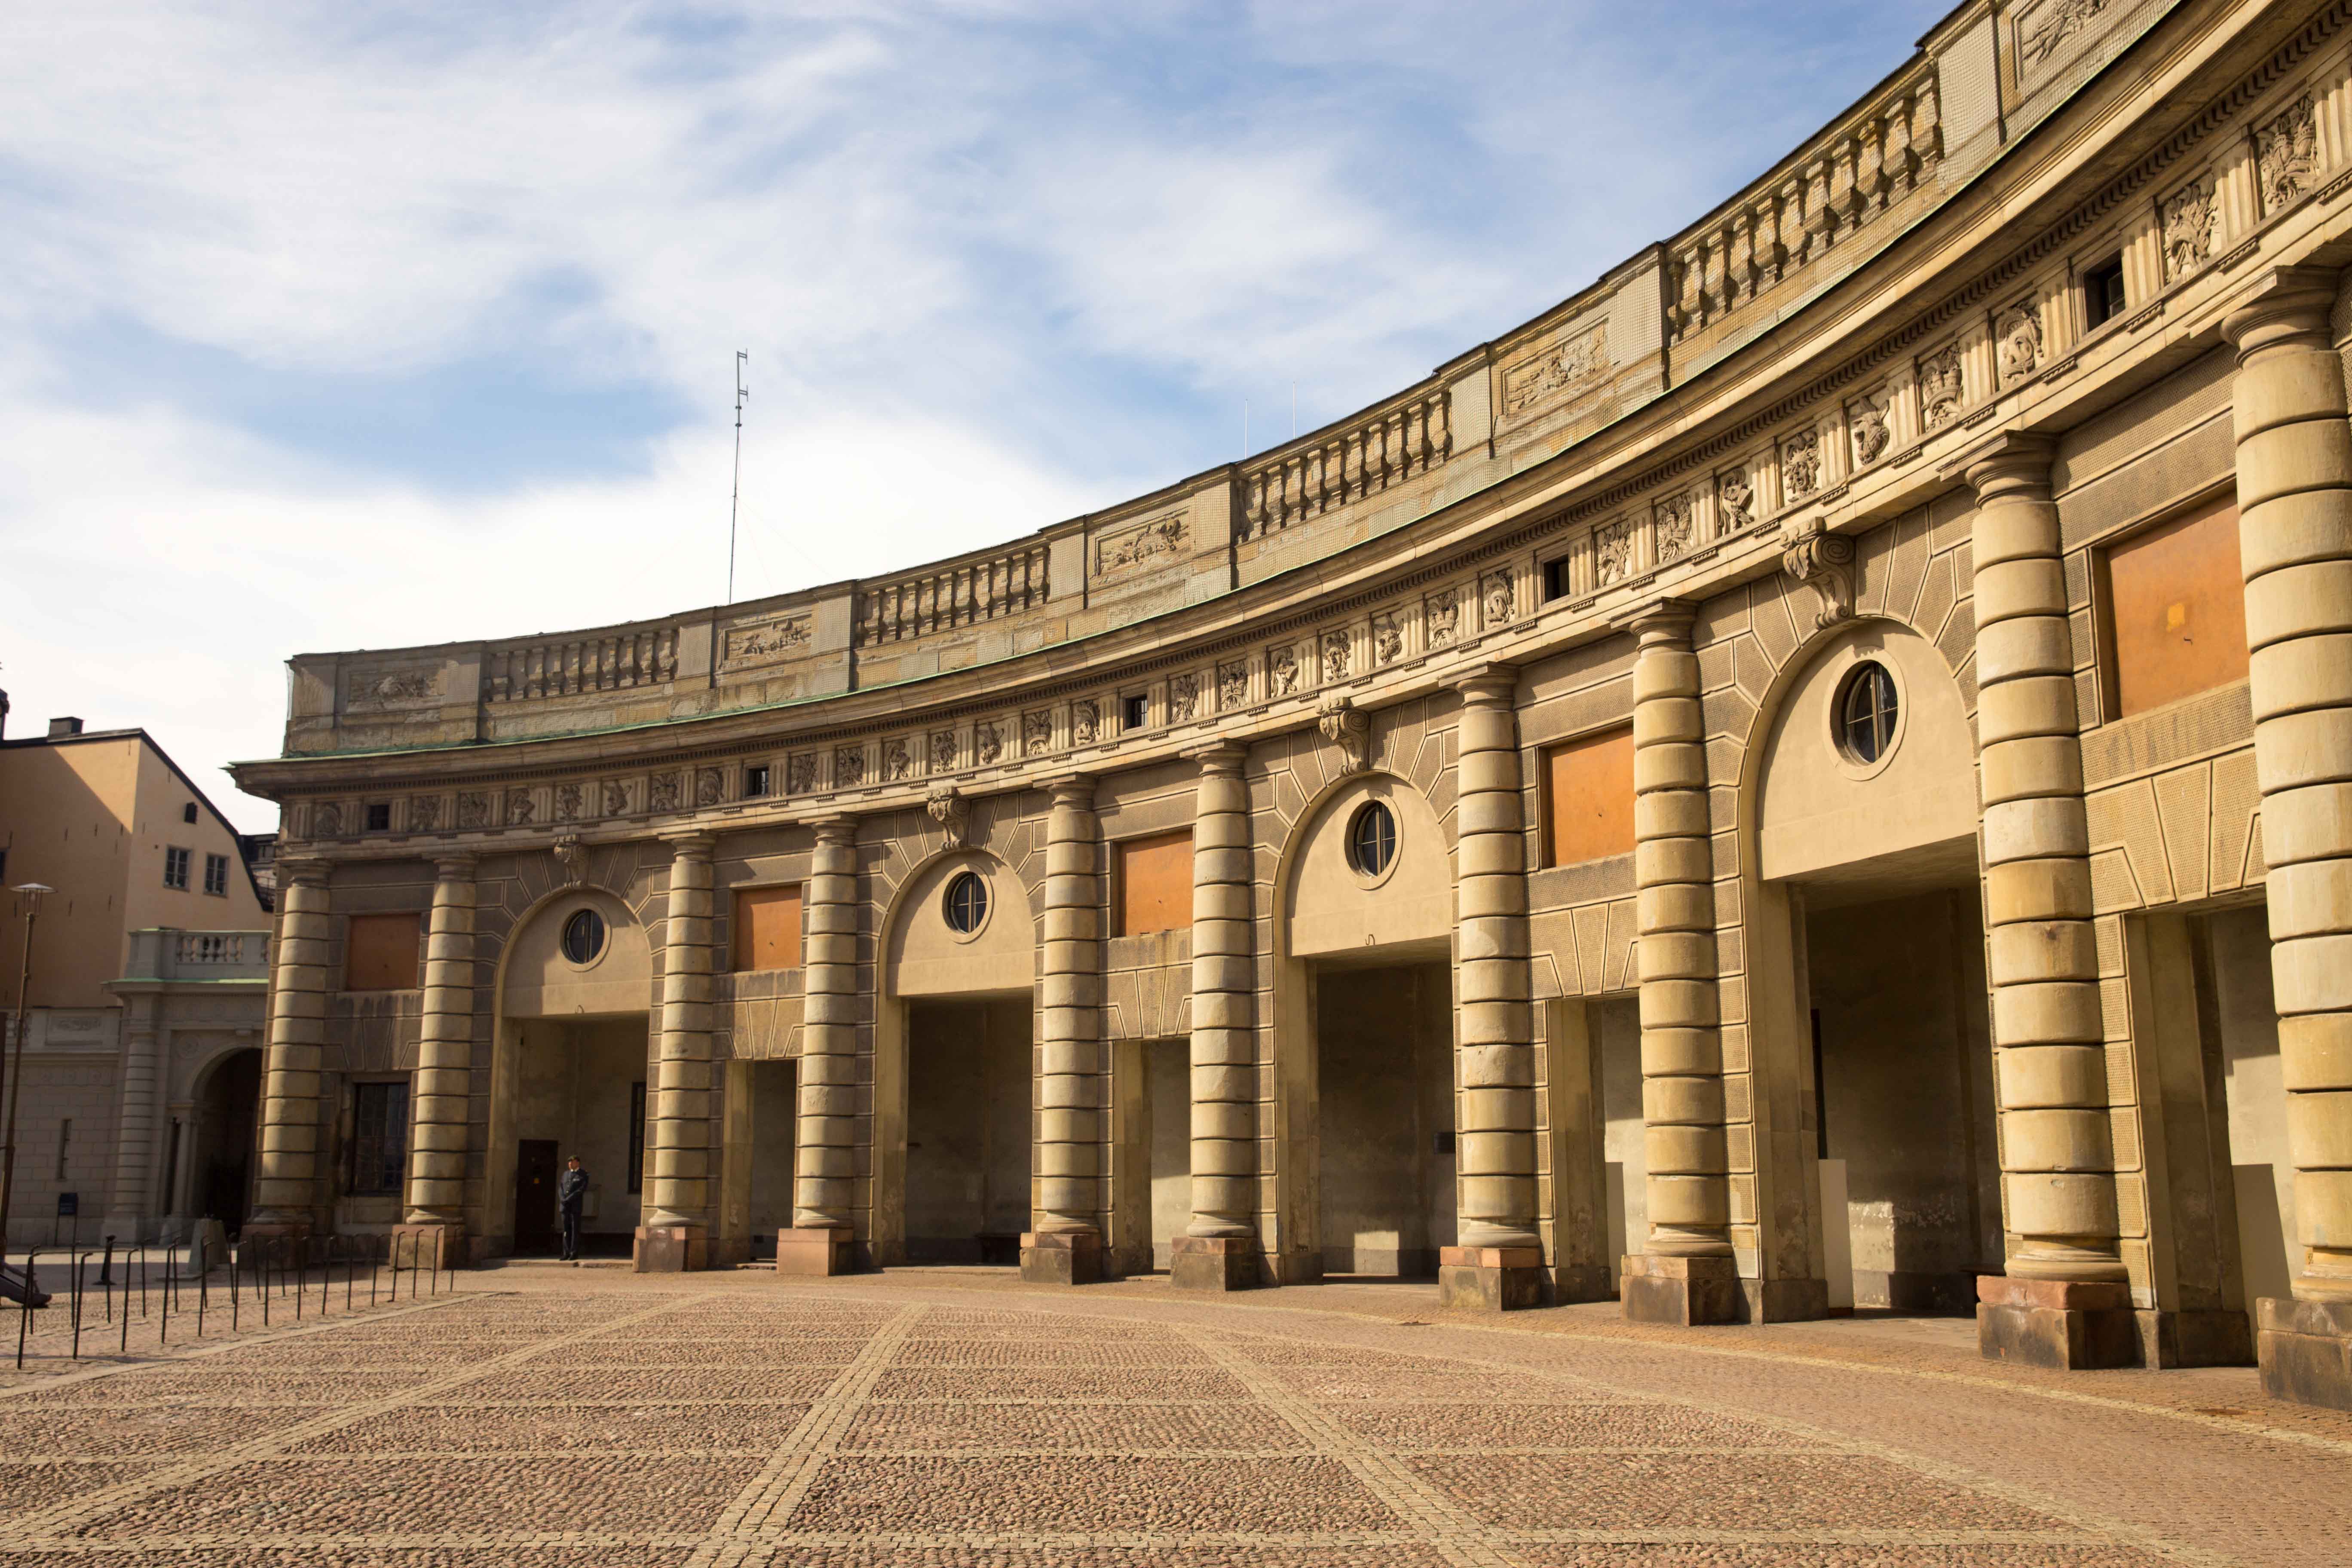 Palais royal kungliga slottet releve garde gamla stan stockholm